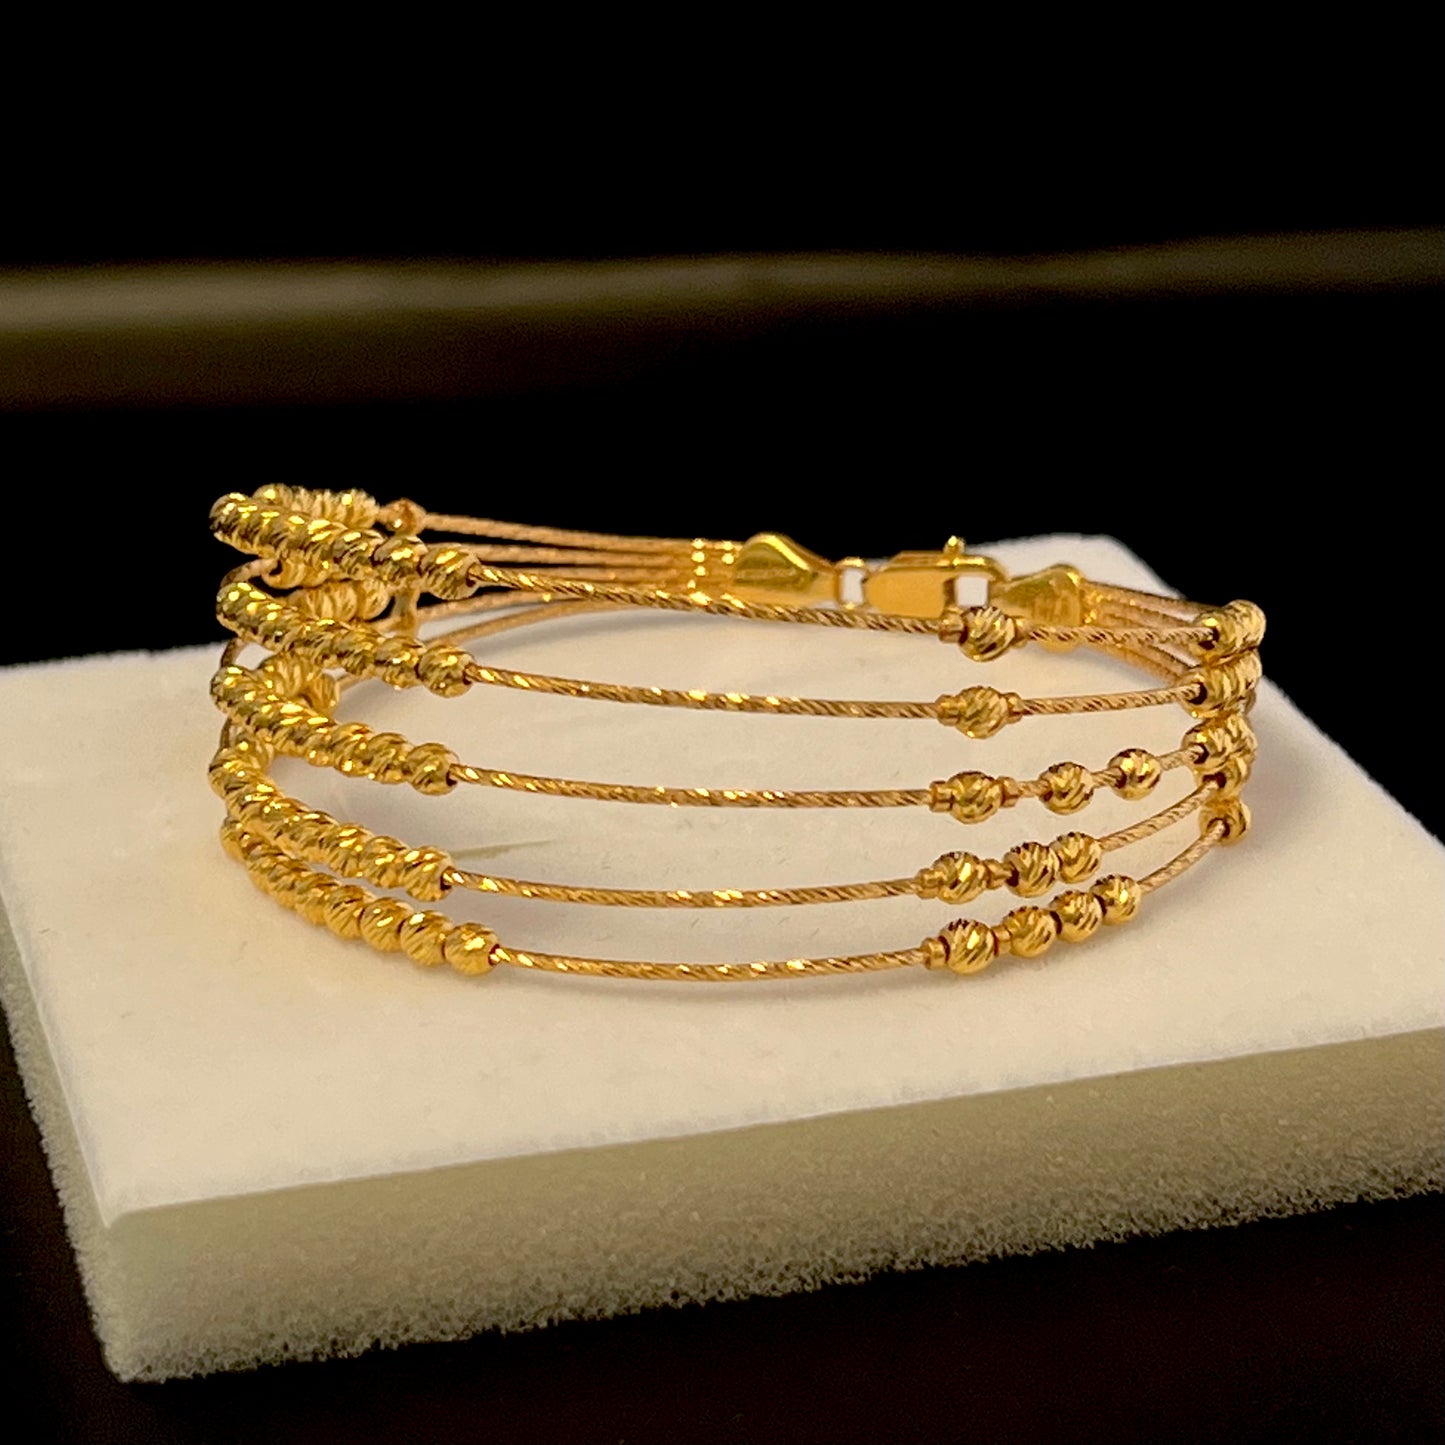 5-line Golden Bracelet with Lobster Stock